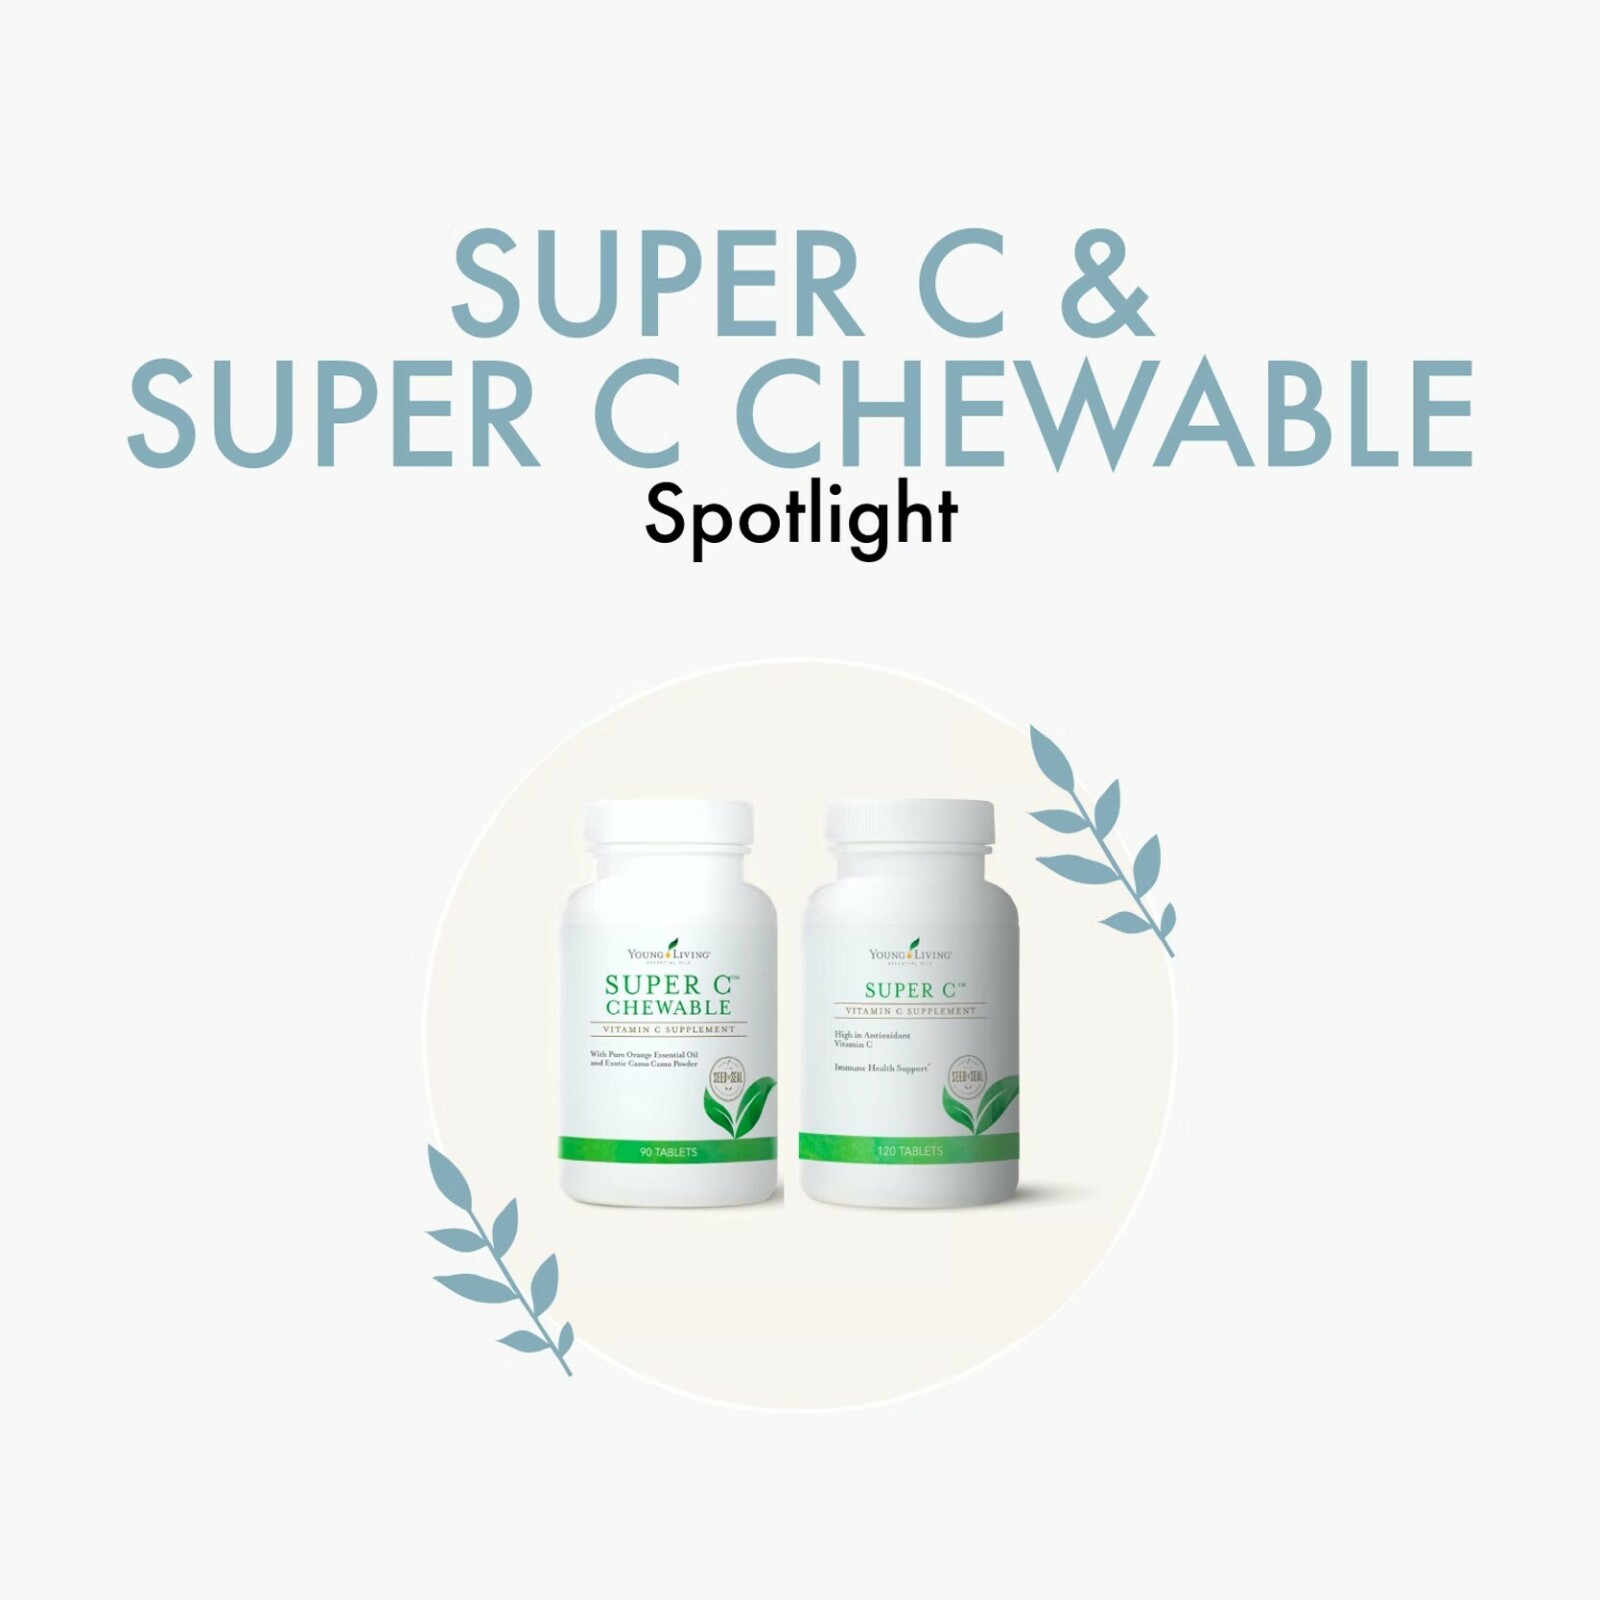 Super C & Super C Chewable Spotlight